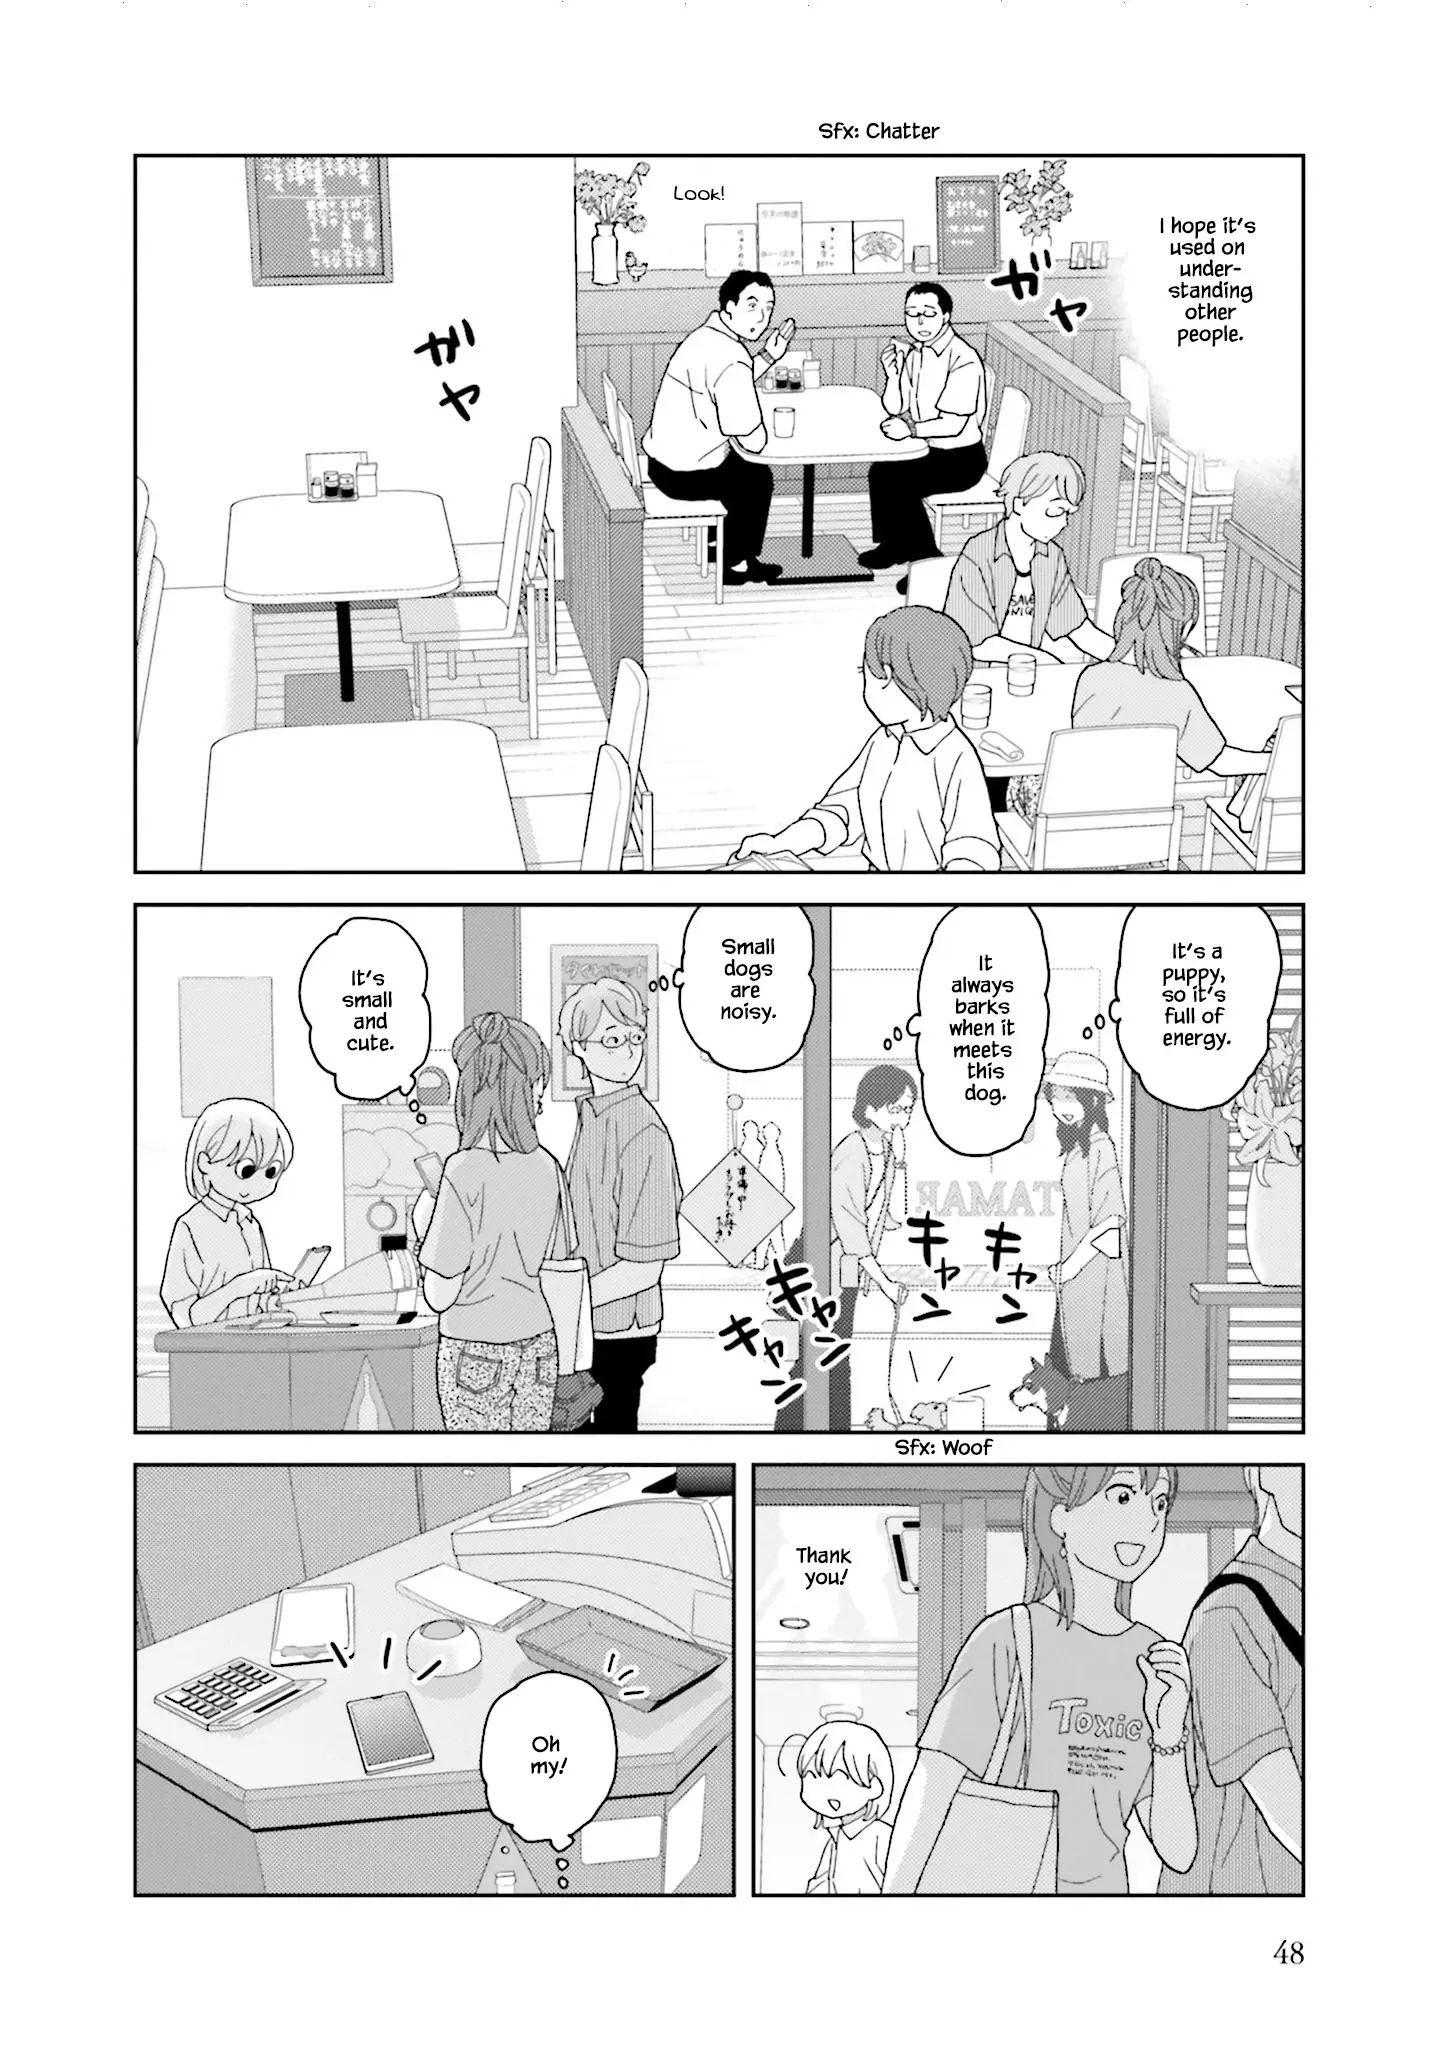 Takako-San - 68 page 6-f7447abe